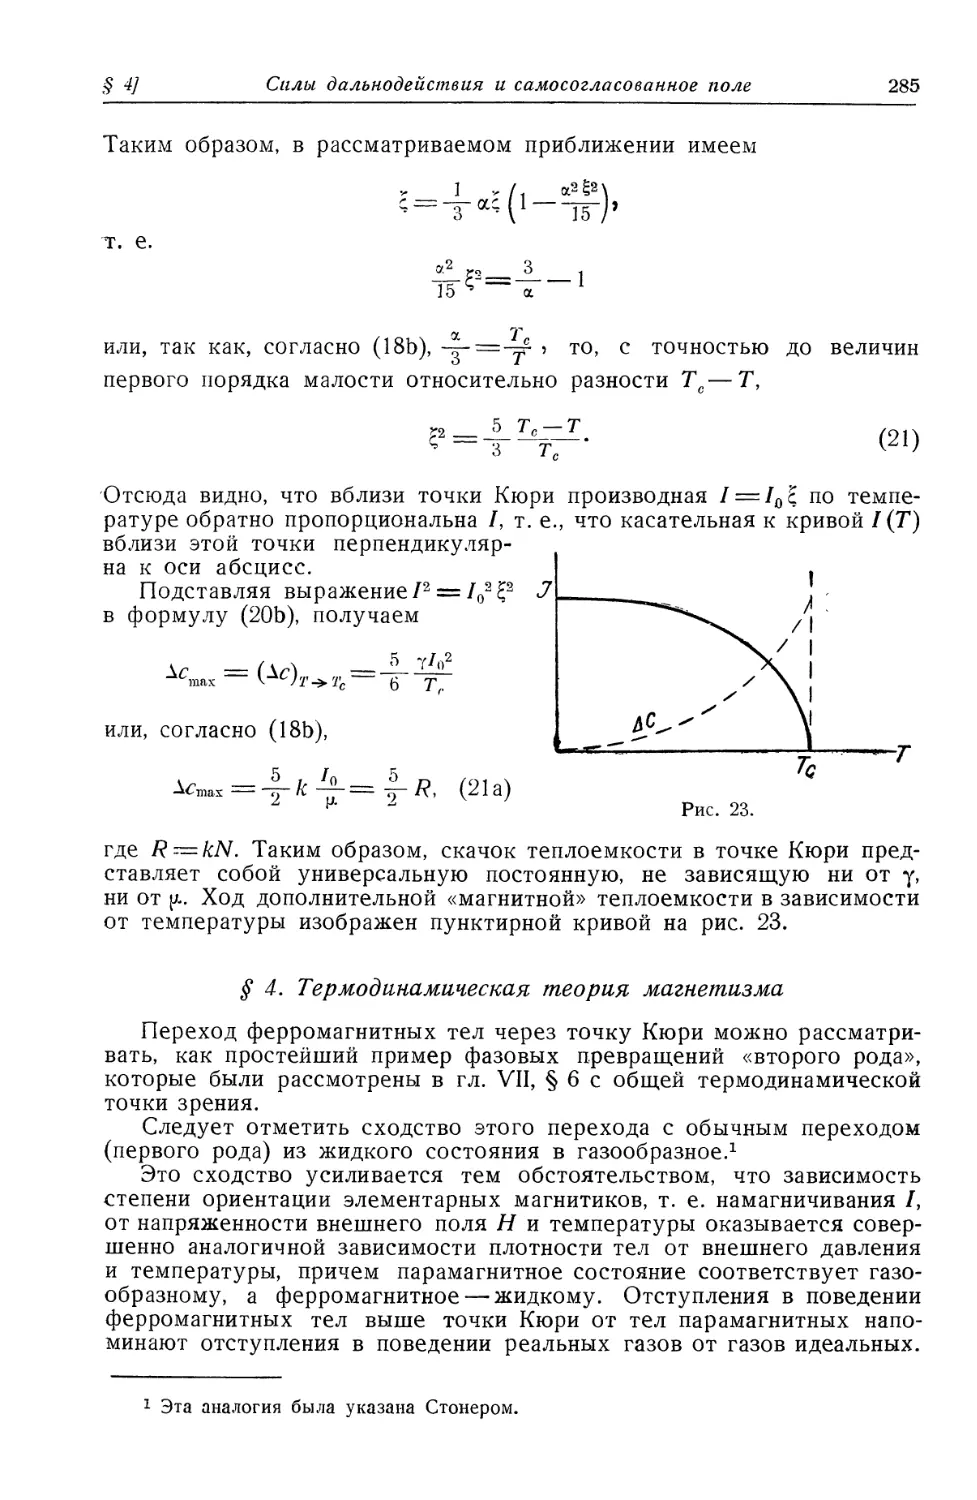 § 4. Термодинамическая теория магнетизма